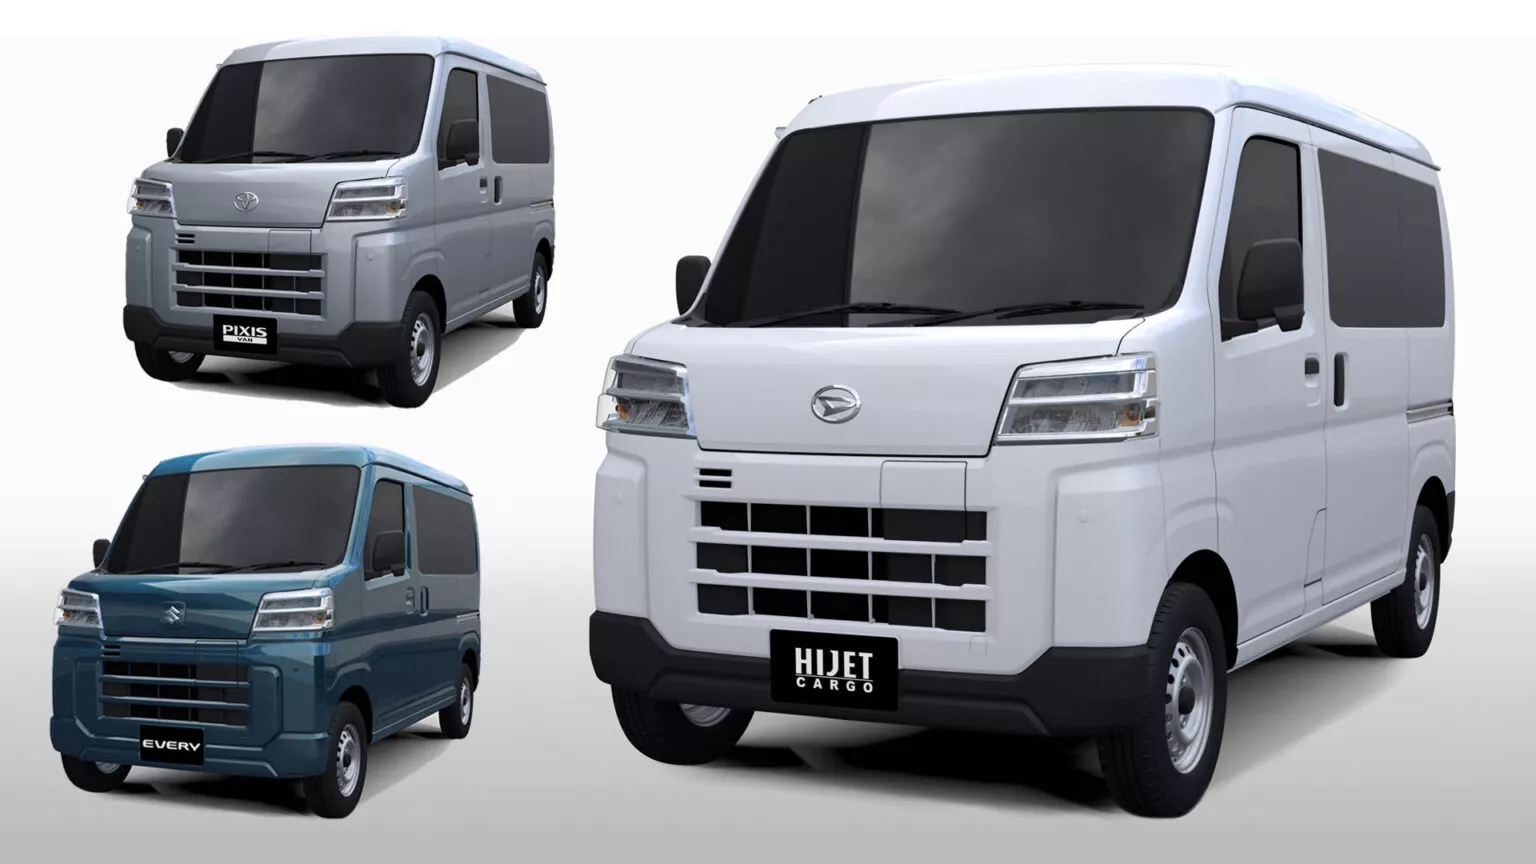 Daihatsu Suzuki Toyota Electric Kei Vans main 1536x864 1